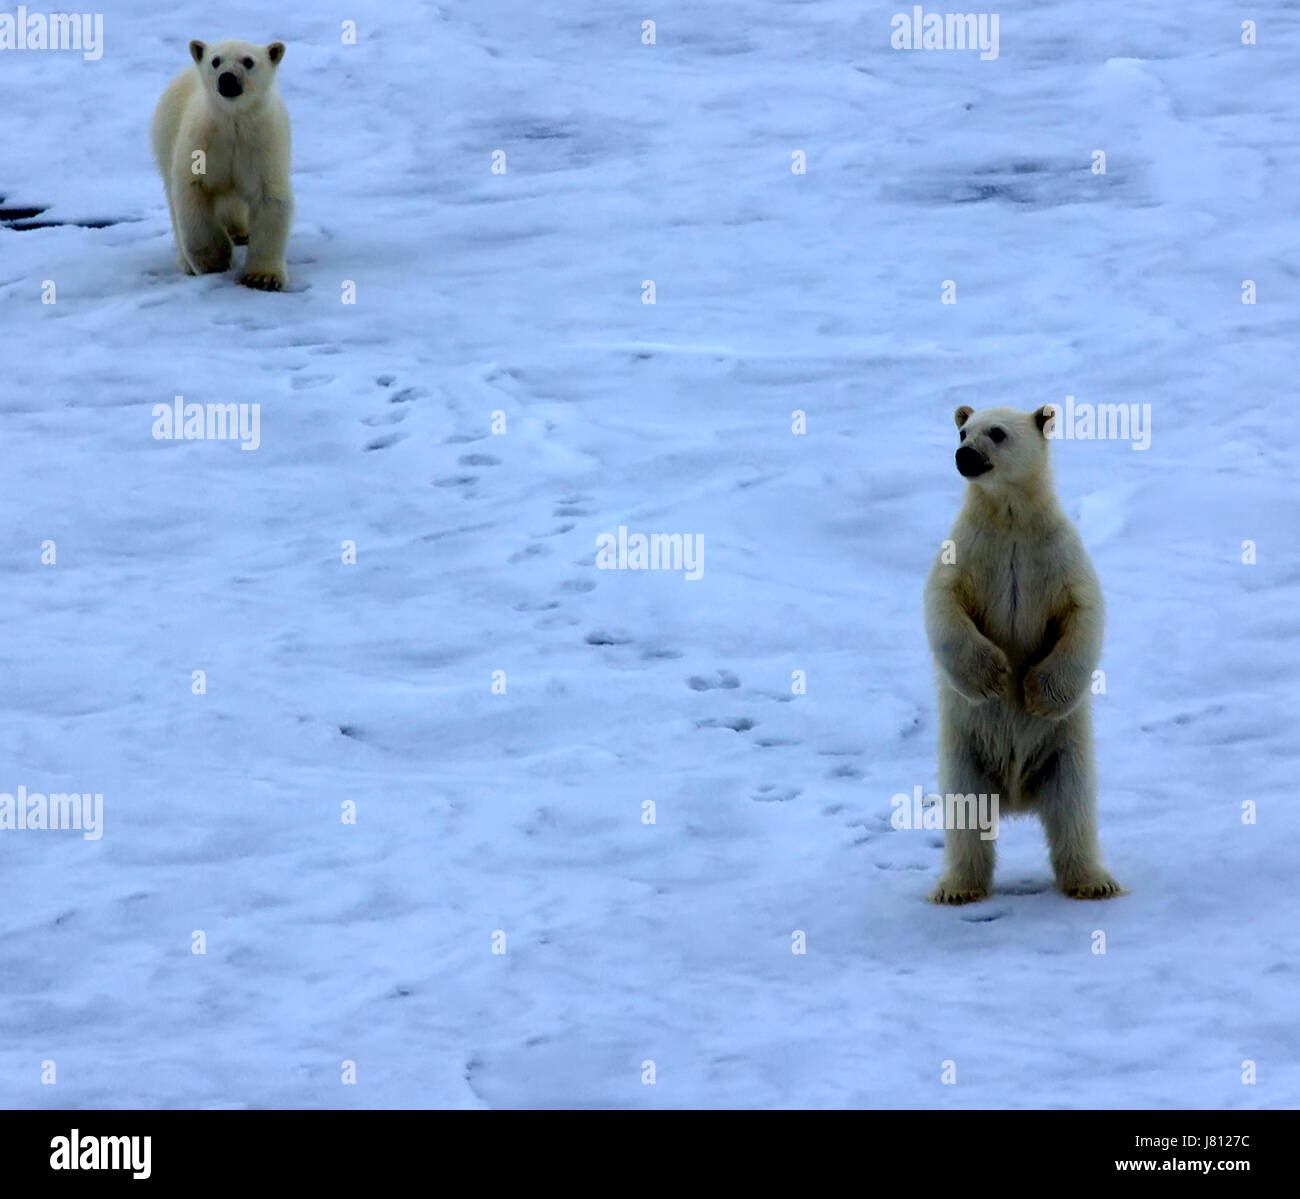 Orso polare vicino al Polo Nord (86 e 87 gradi di latitudine nord). I cuccioli si avvicinò a energia nucleare e rompighiaccio si alzò in piedi sulle sue zampe posteriori, cercando di guardare Foto Stock